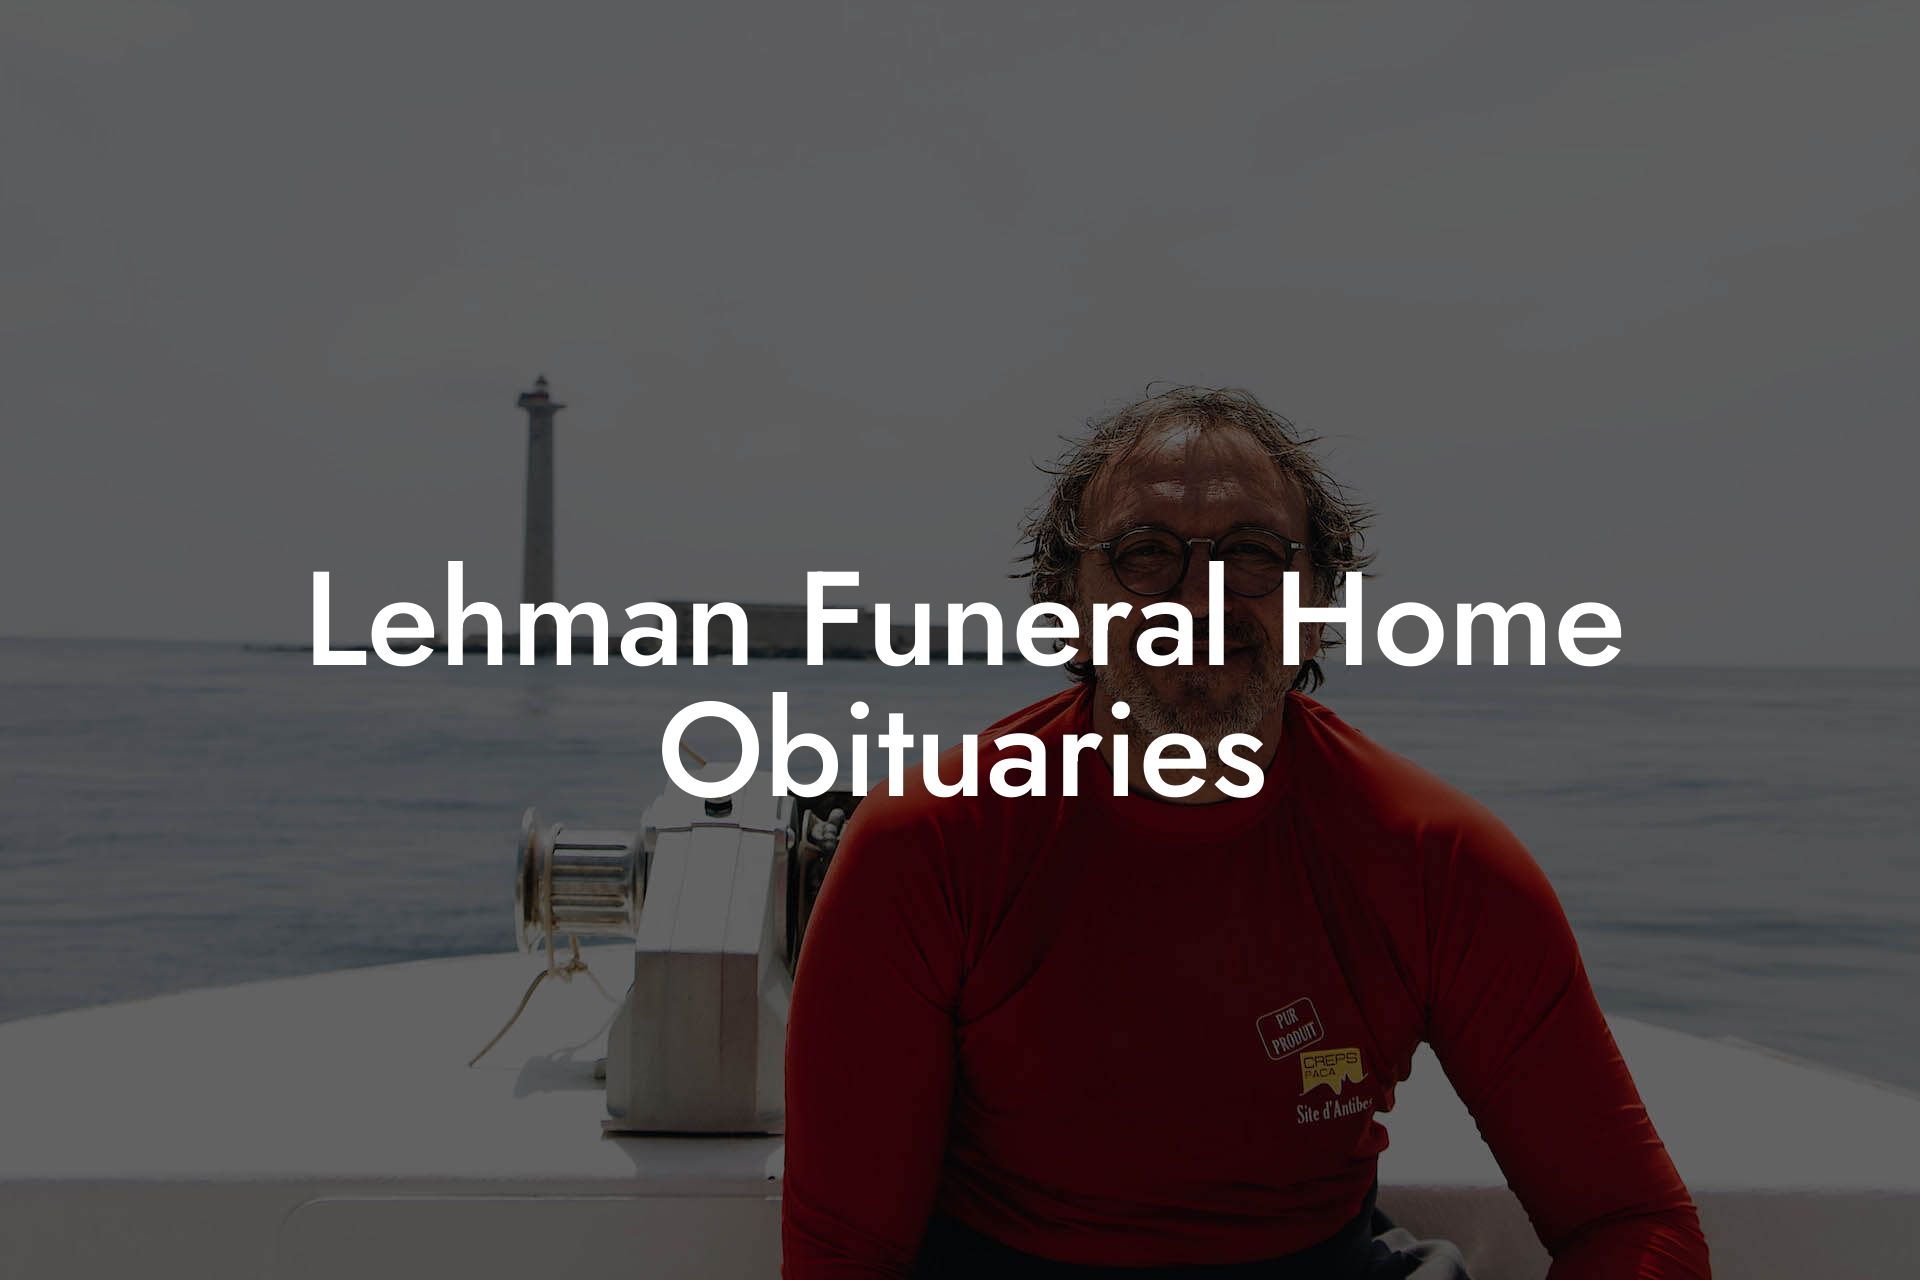 Lehman Funeral Home Obituaries